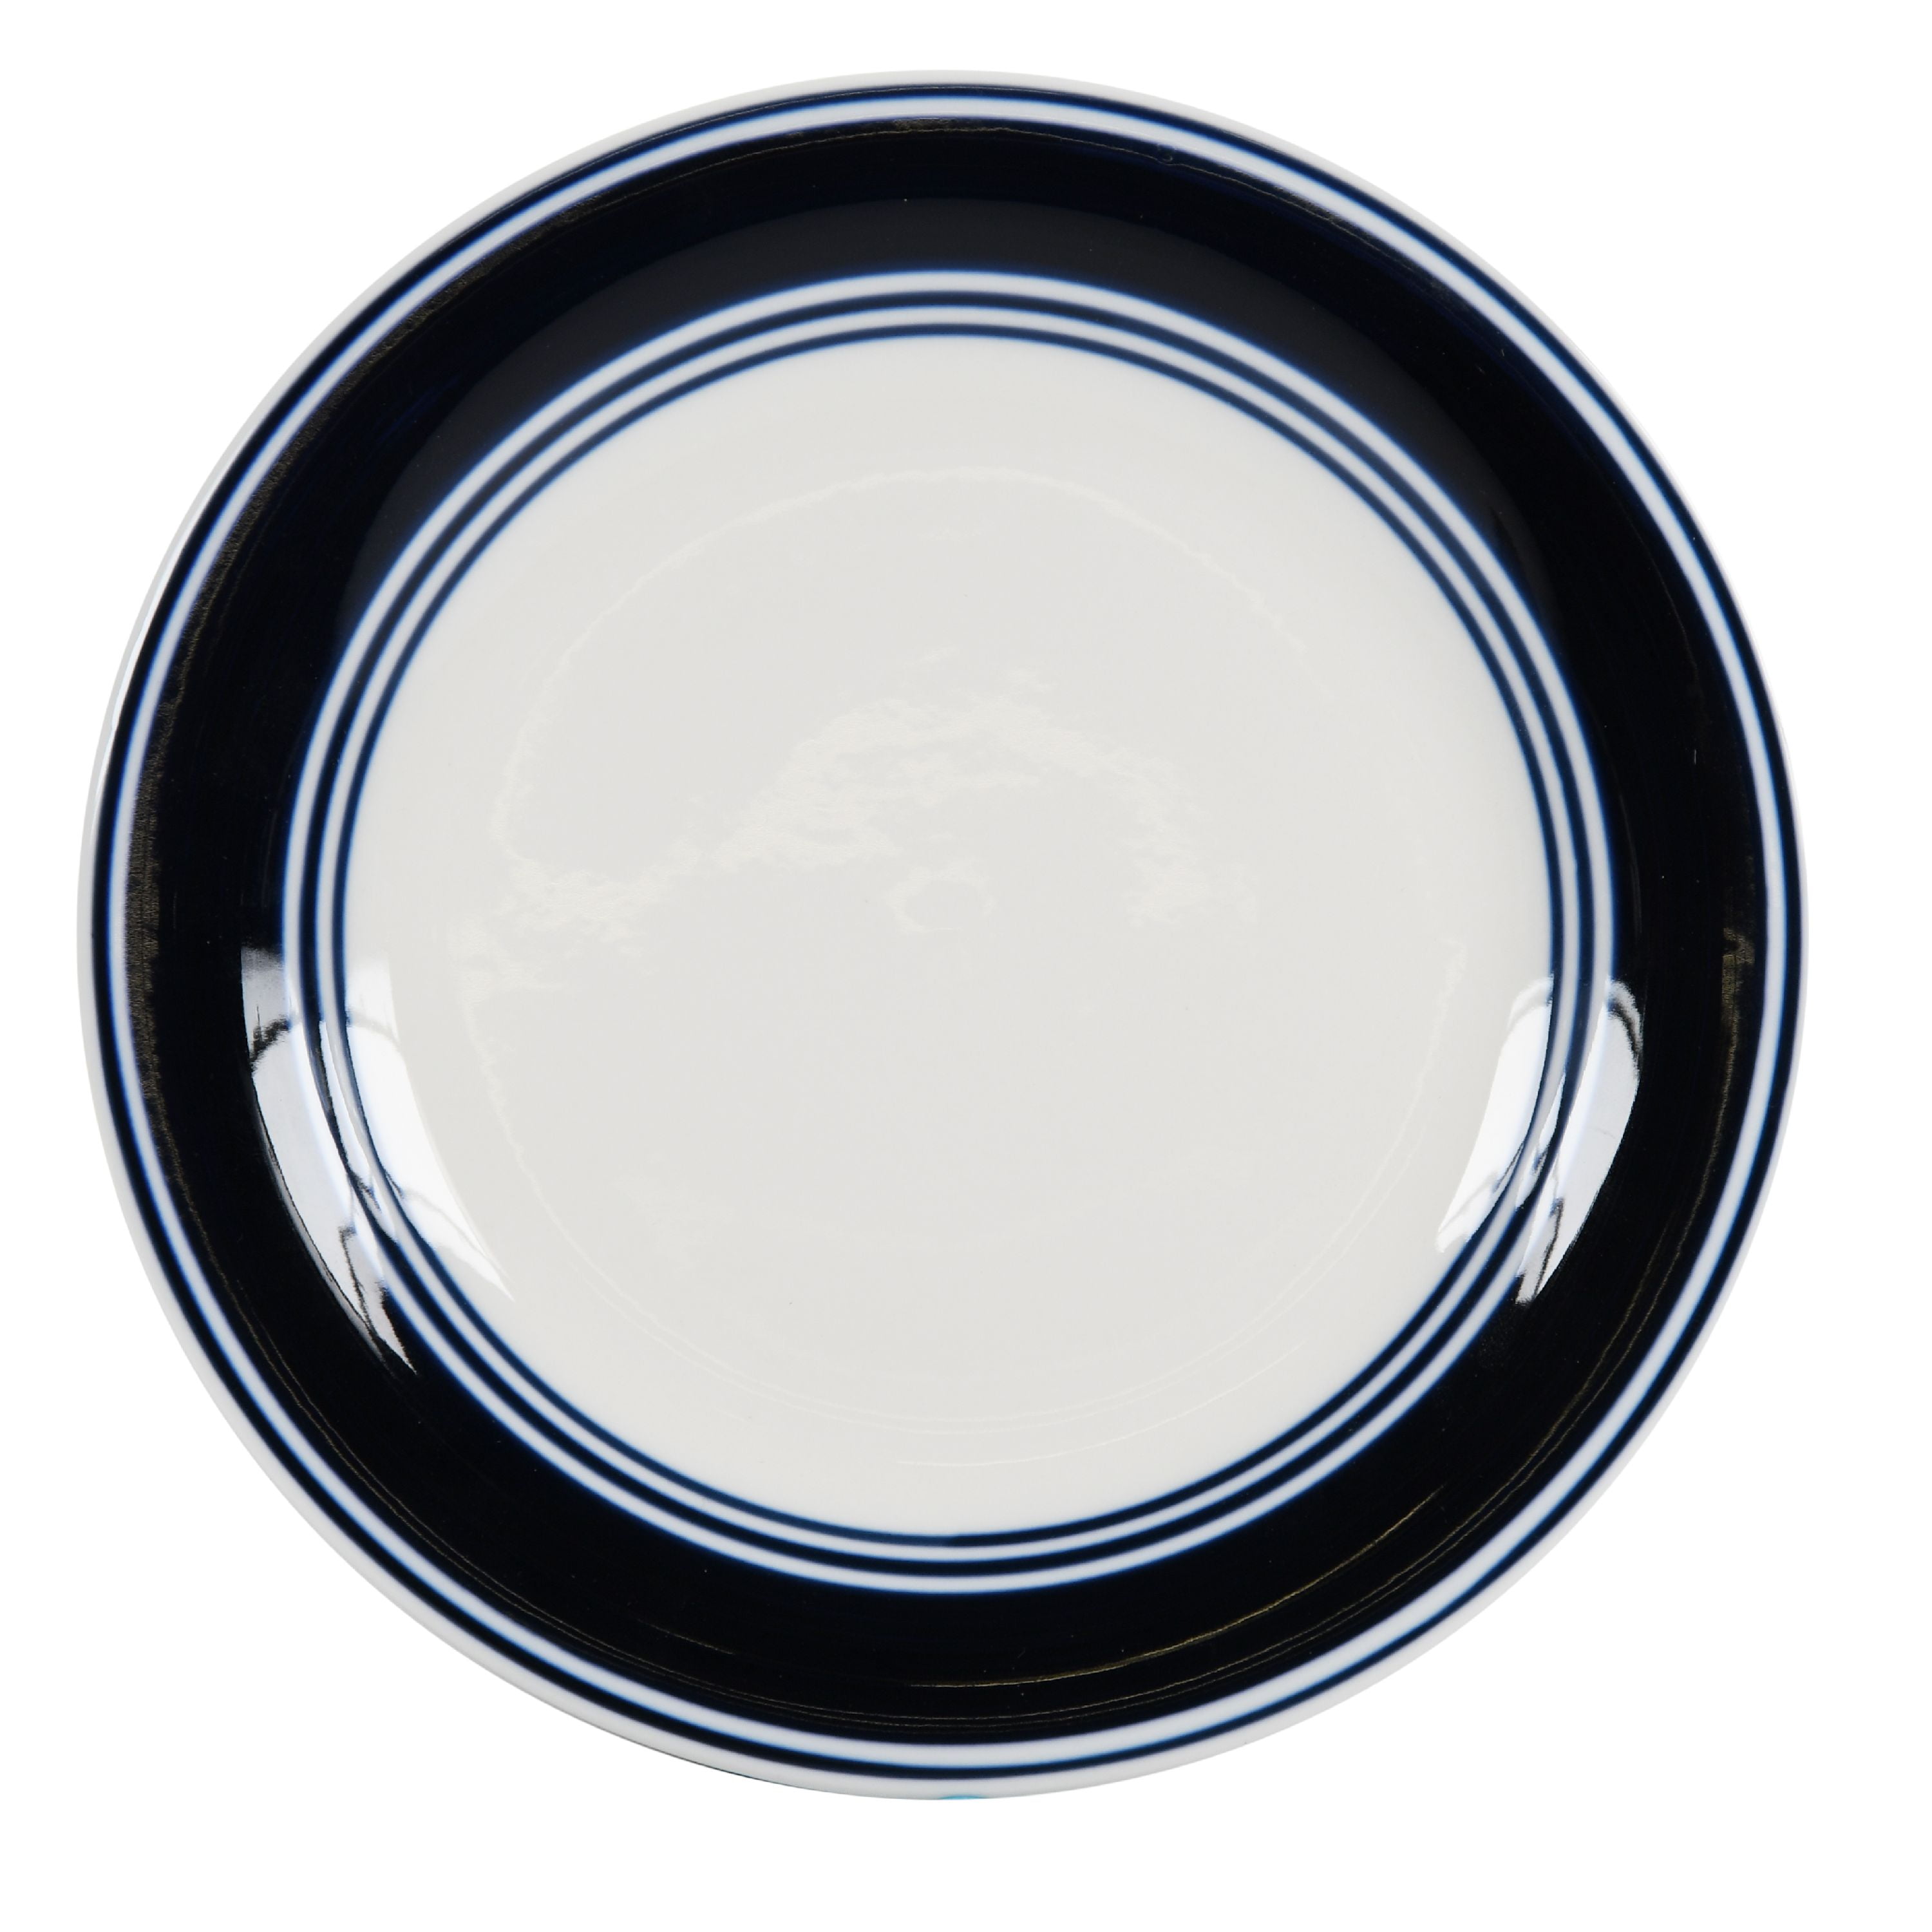 Handmade ceramic cake plate Cobalt blue desert plate with 24 k gold edge Dark blue plate. Lovely kitchen dish Ready to ship dinnerware